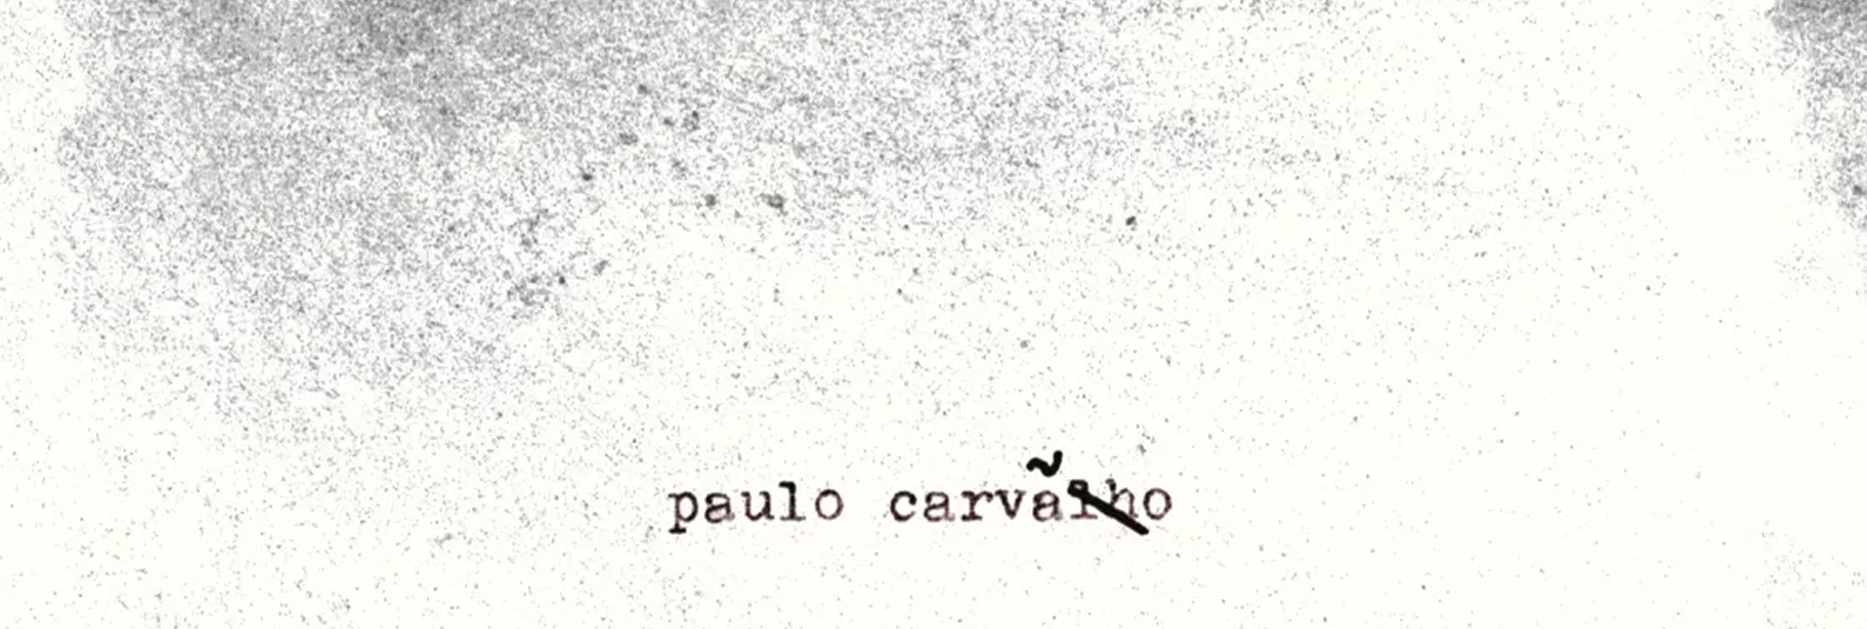 Paulo Carvalho lança CD produzido por Kassin e livro de poemas